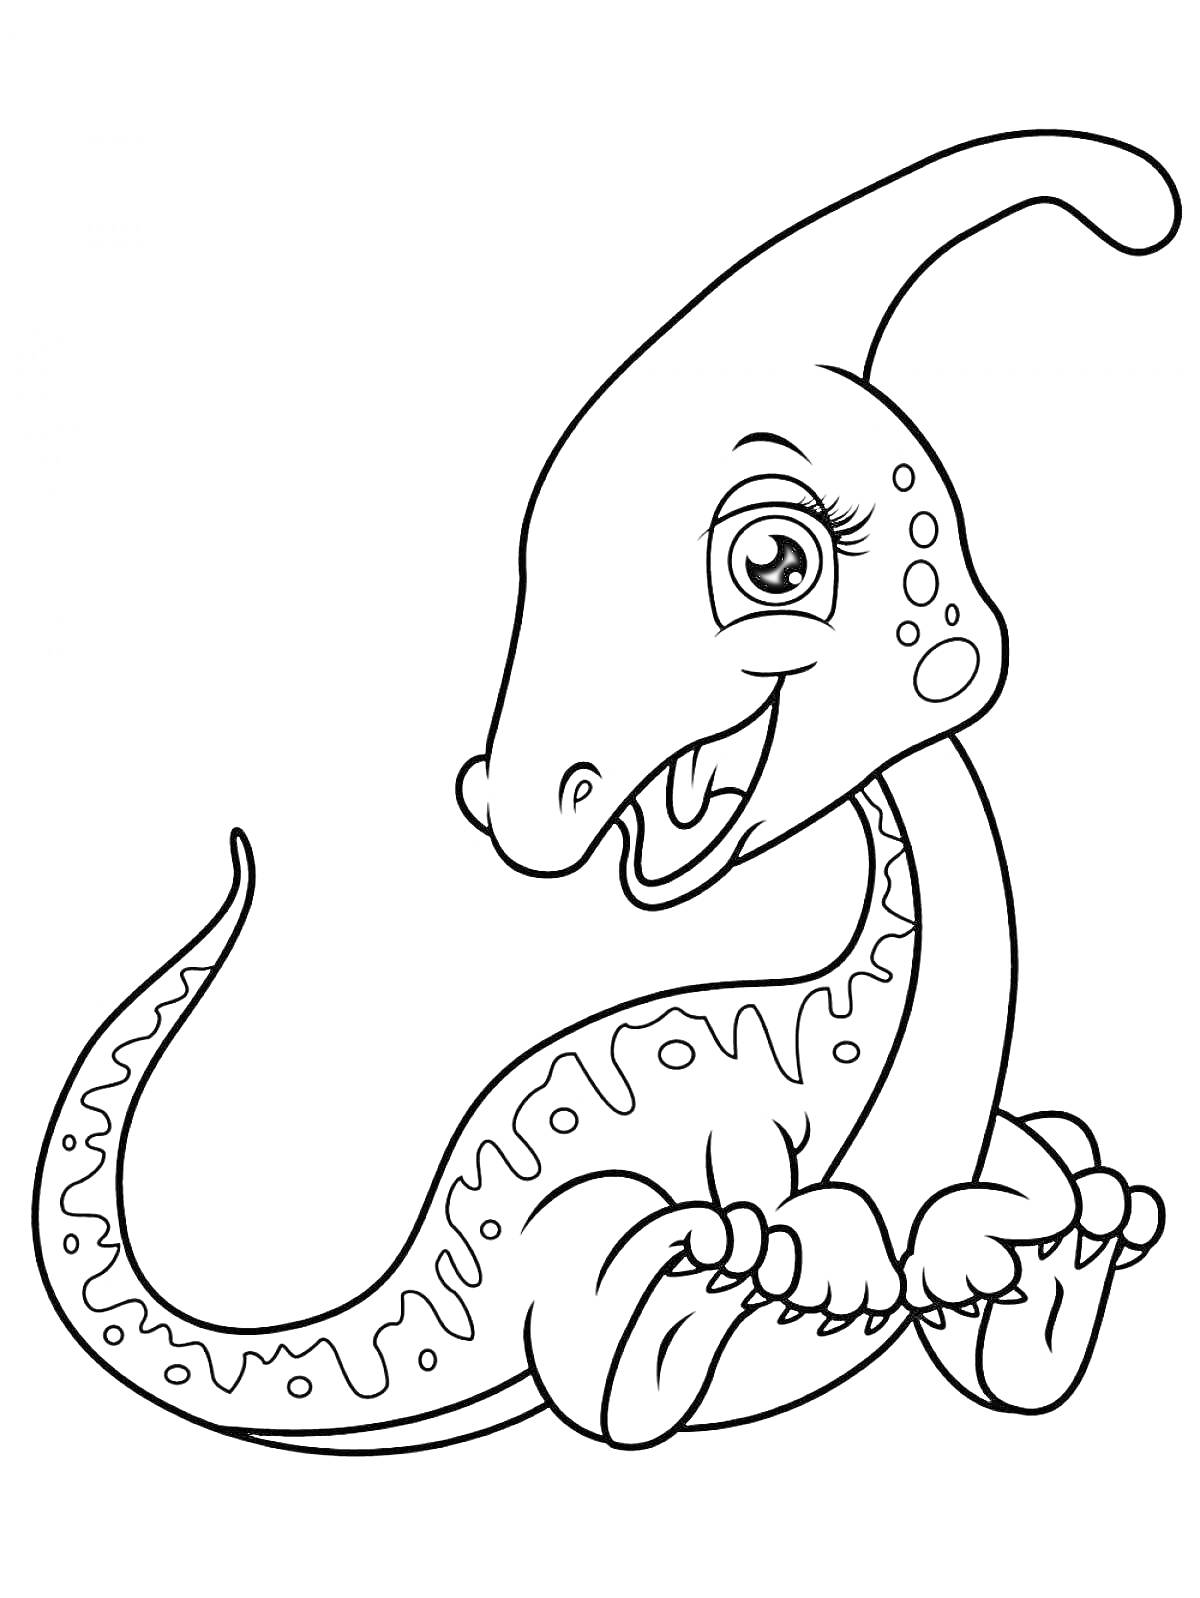 Раскраска Динозавр с большими глазами и длинной шеей, улыбается, сидит